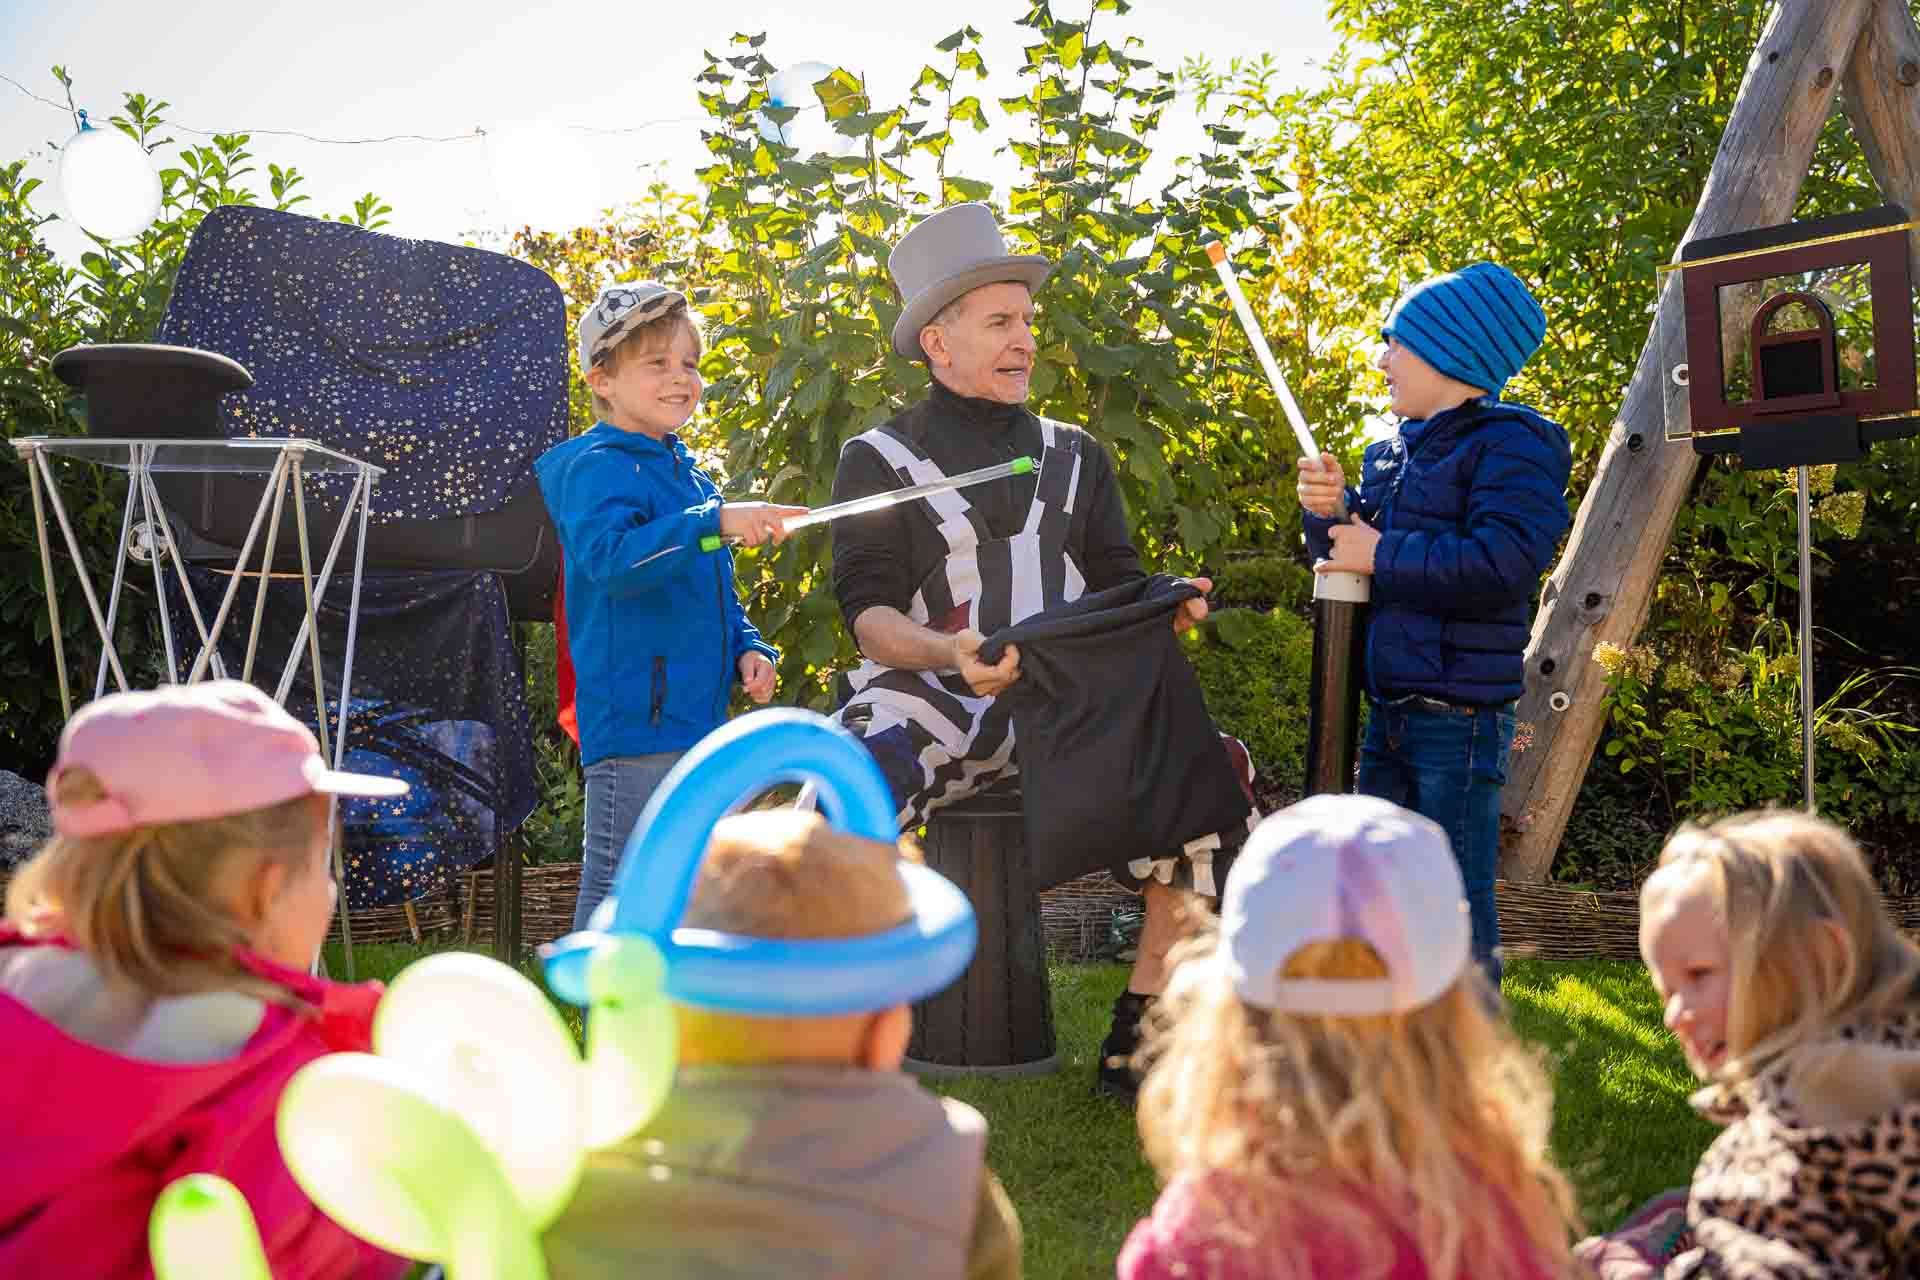 Kinderzauberer Michael aus München bei einer Zaubershow für Kinder im Freien.